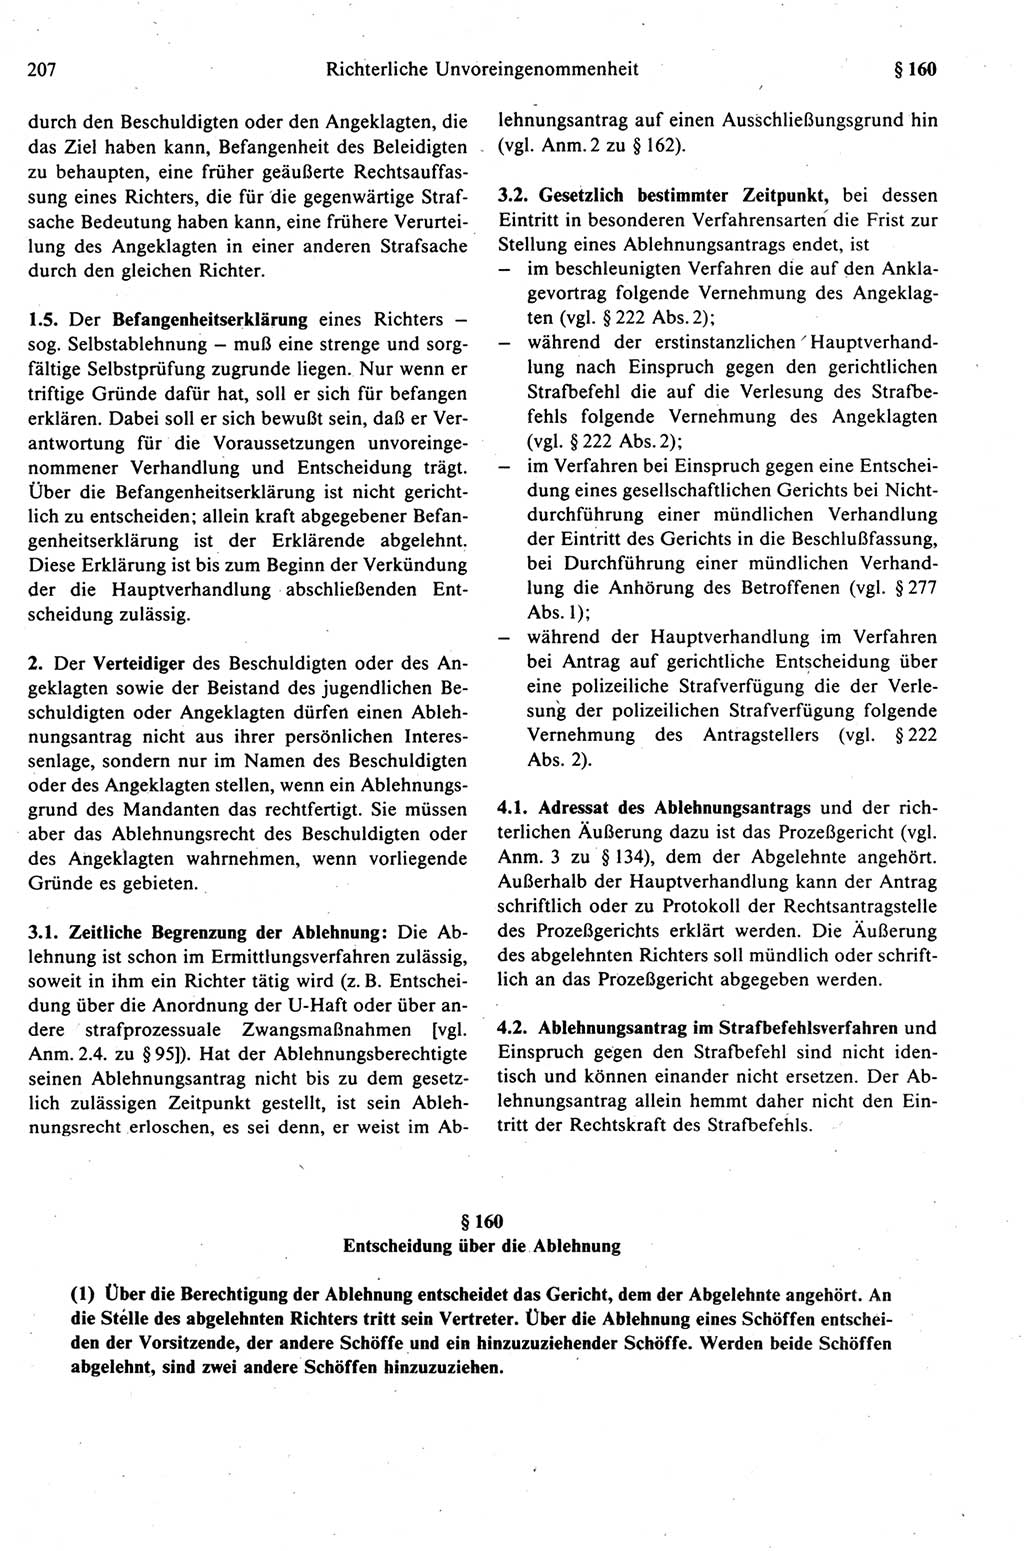 Strafprozeßrecht der DDR (Deutsche Demokratische Republik), Kommentar zur Strafprozeßordnung (StPO) 1989, Seite 207 (Strafprozeßr. DDR Komm. StPO 1989, S. 207)